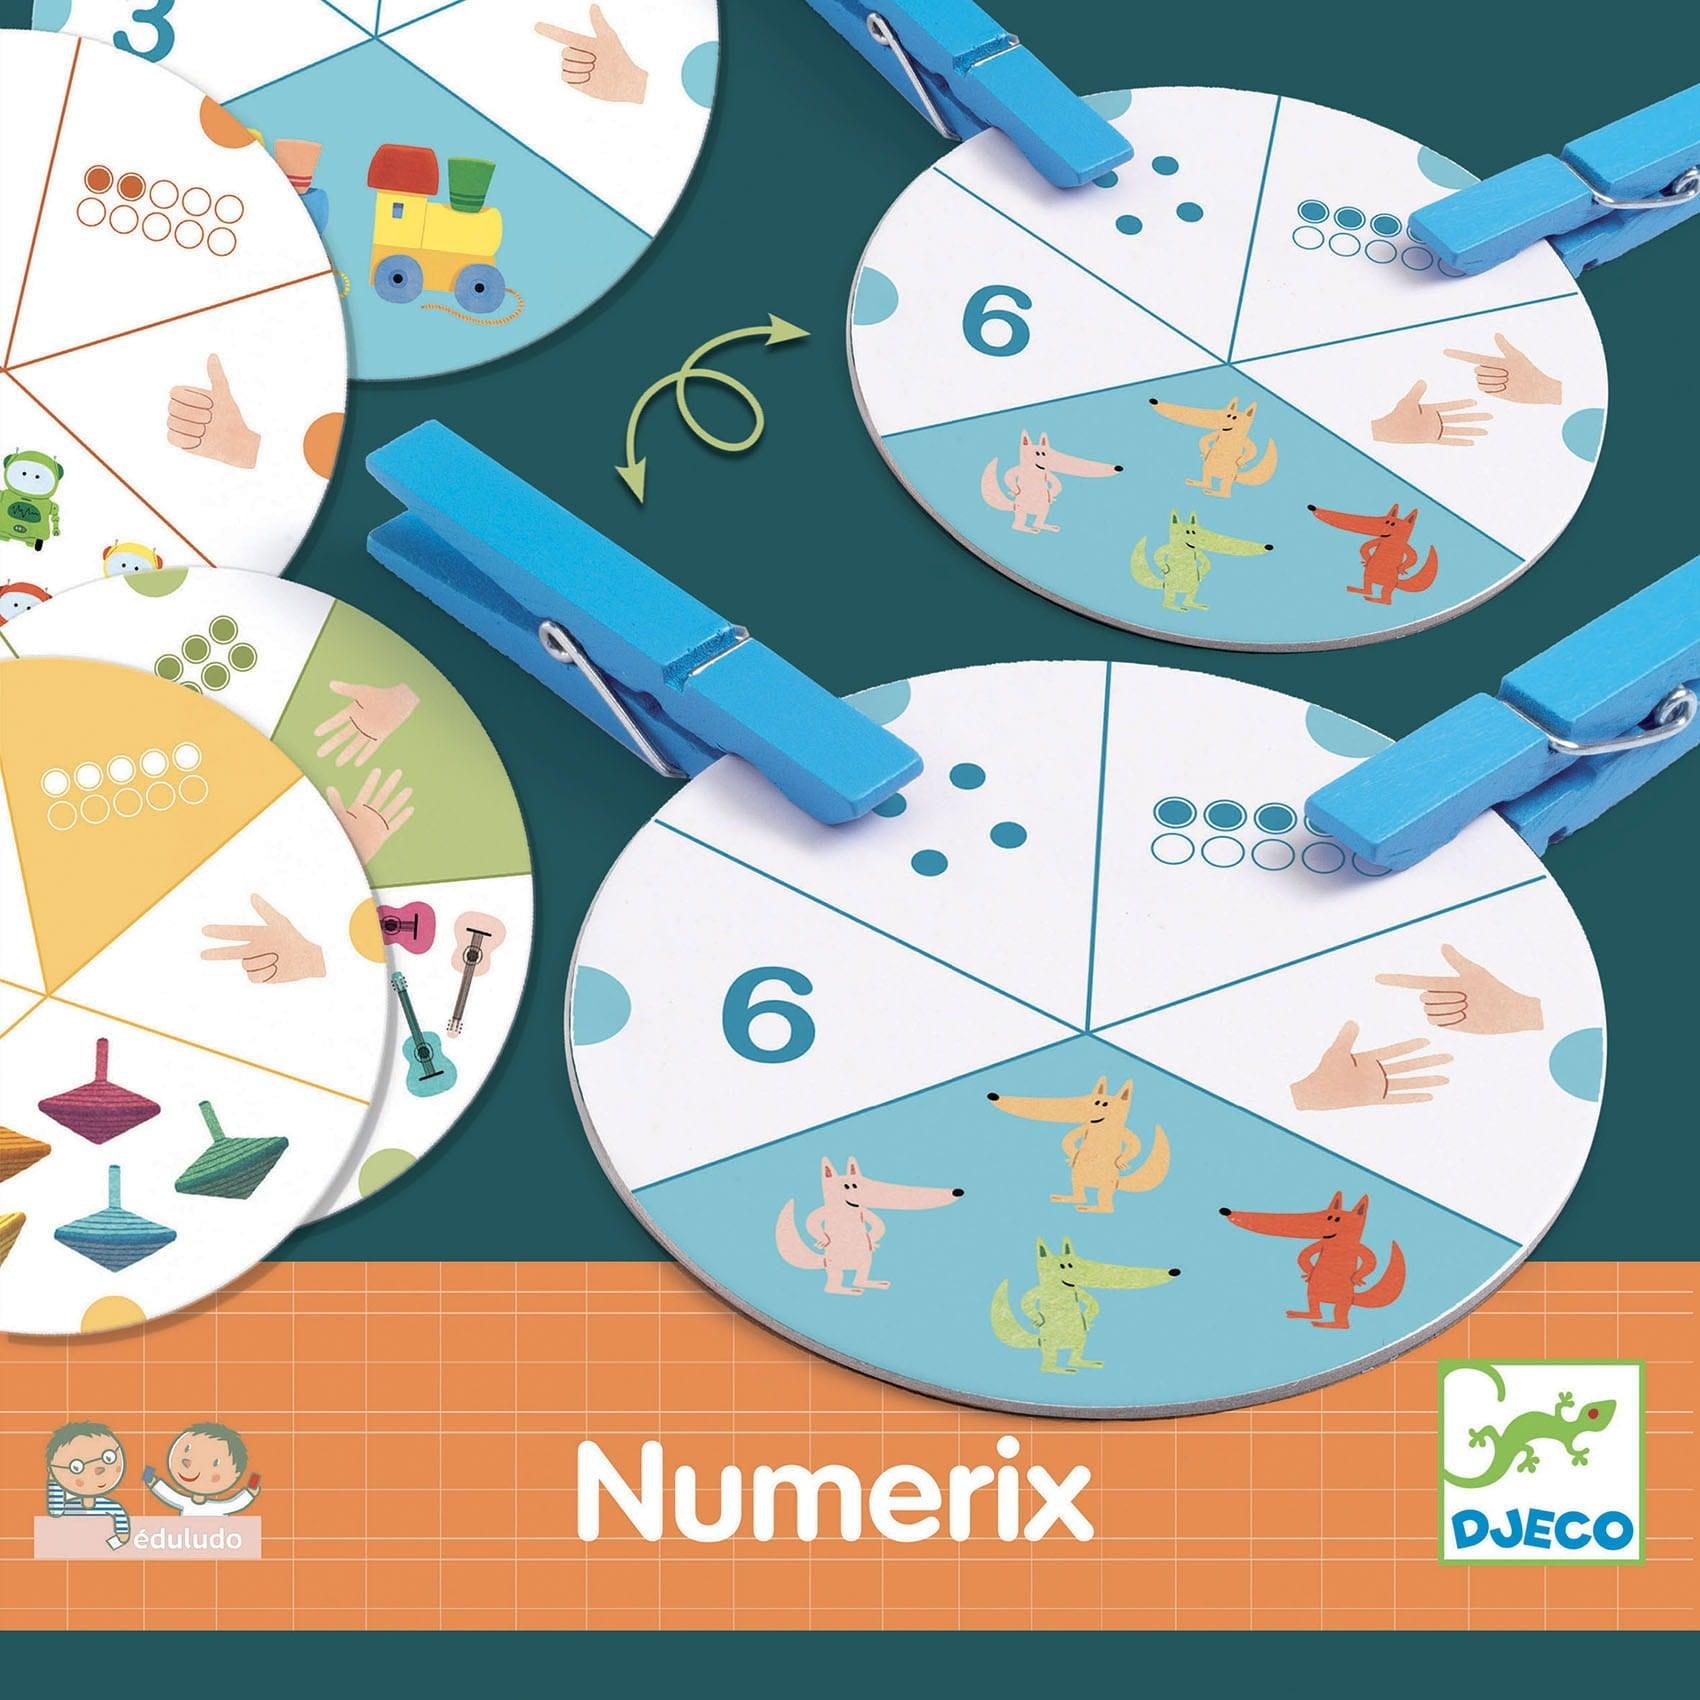 DJECO: gioco educativo con mollex eduludo numerix